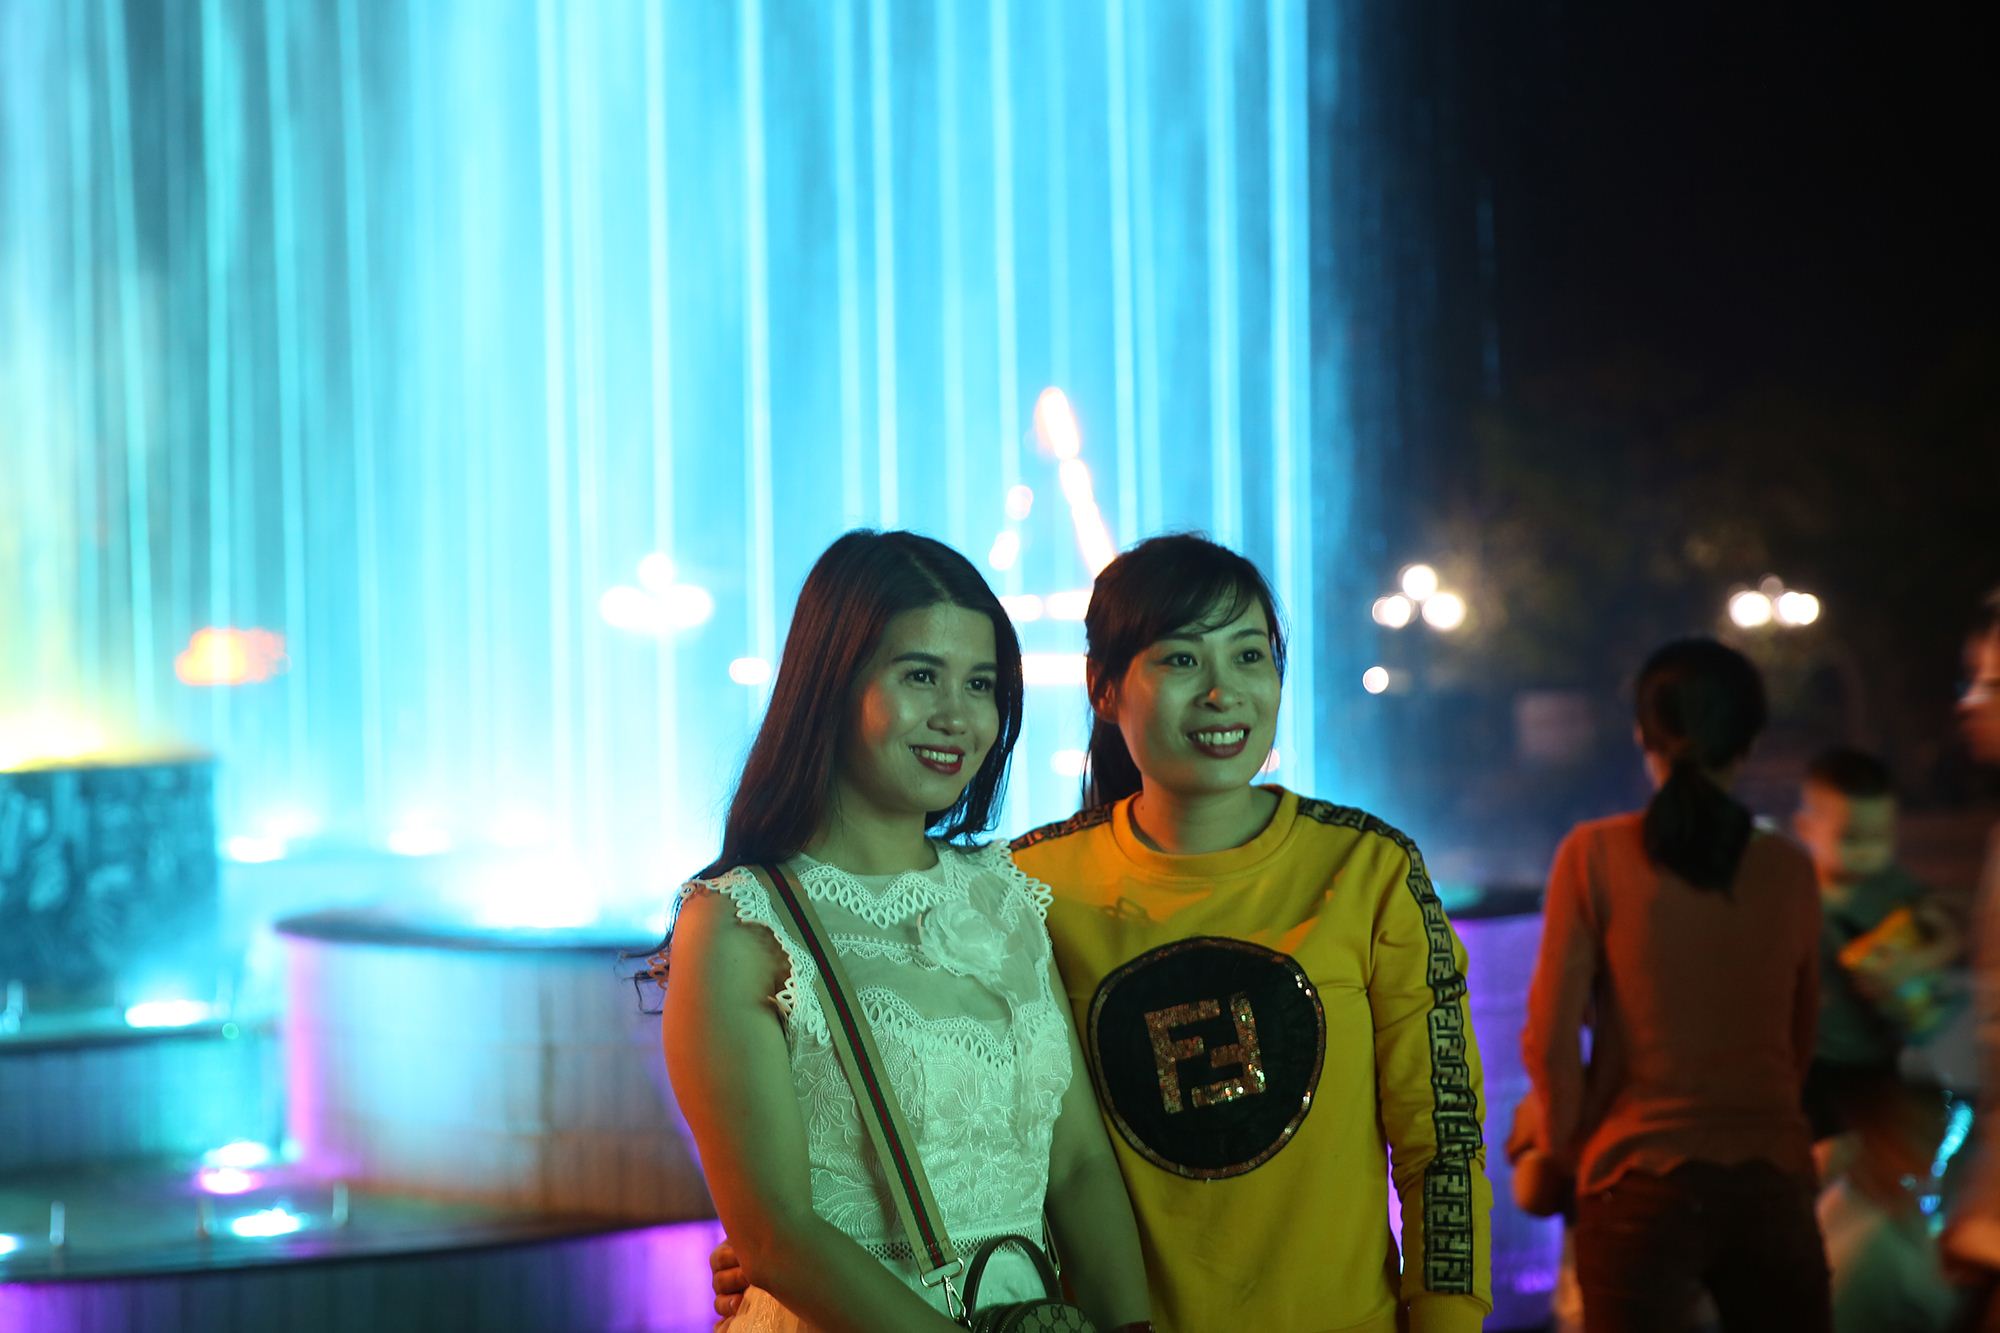 Chương trình Lễ hội ánh sáng là một trong những chương trình sẽ được khu du lịch Quảng Ninh Gate triển khai từ nay cho đến sang đầu năm mới 2019. Với những cách làm phong phú, đa dạng các hoạt động, khu du lịch Quảng Ninh Gate xứng đáng là điểm đến mới cho du khách trong và ngoài tỉnh.